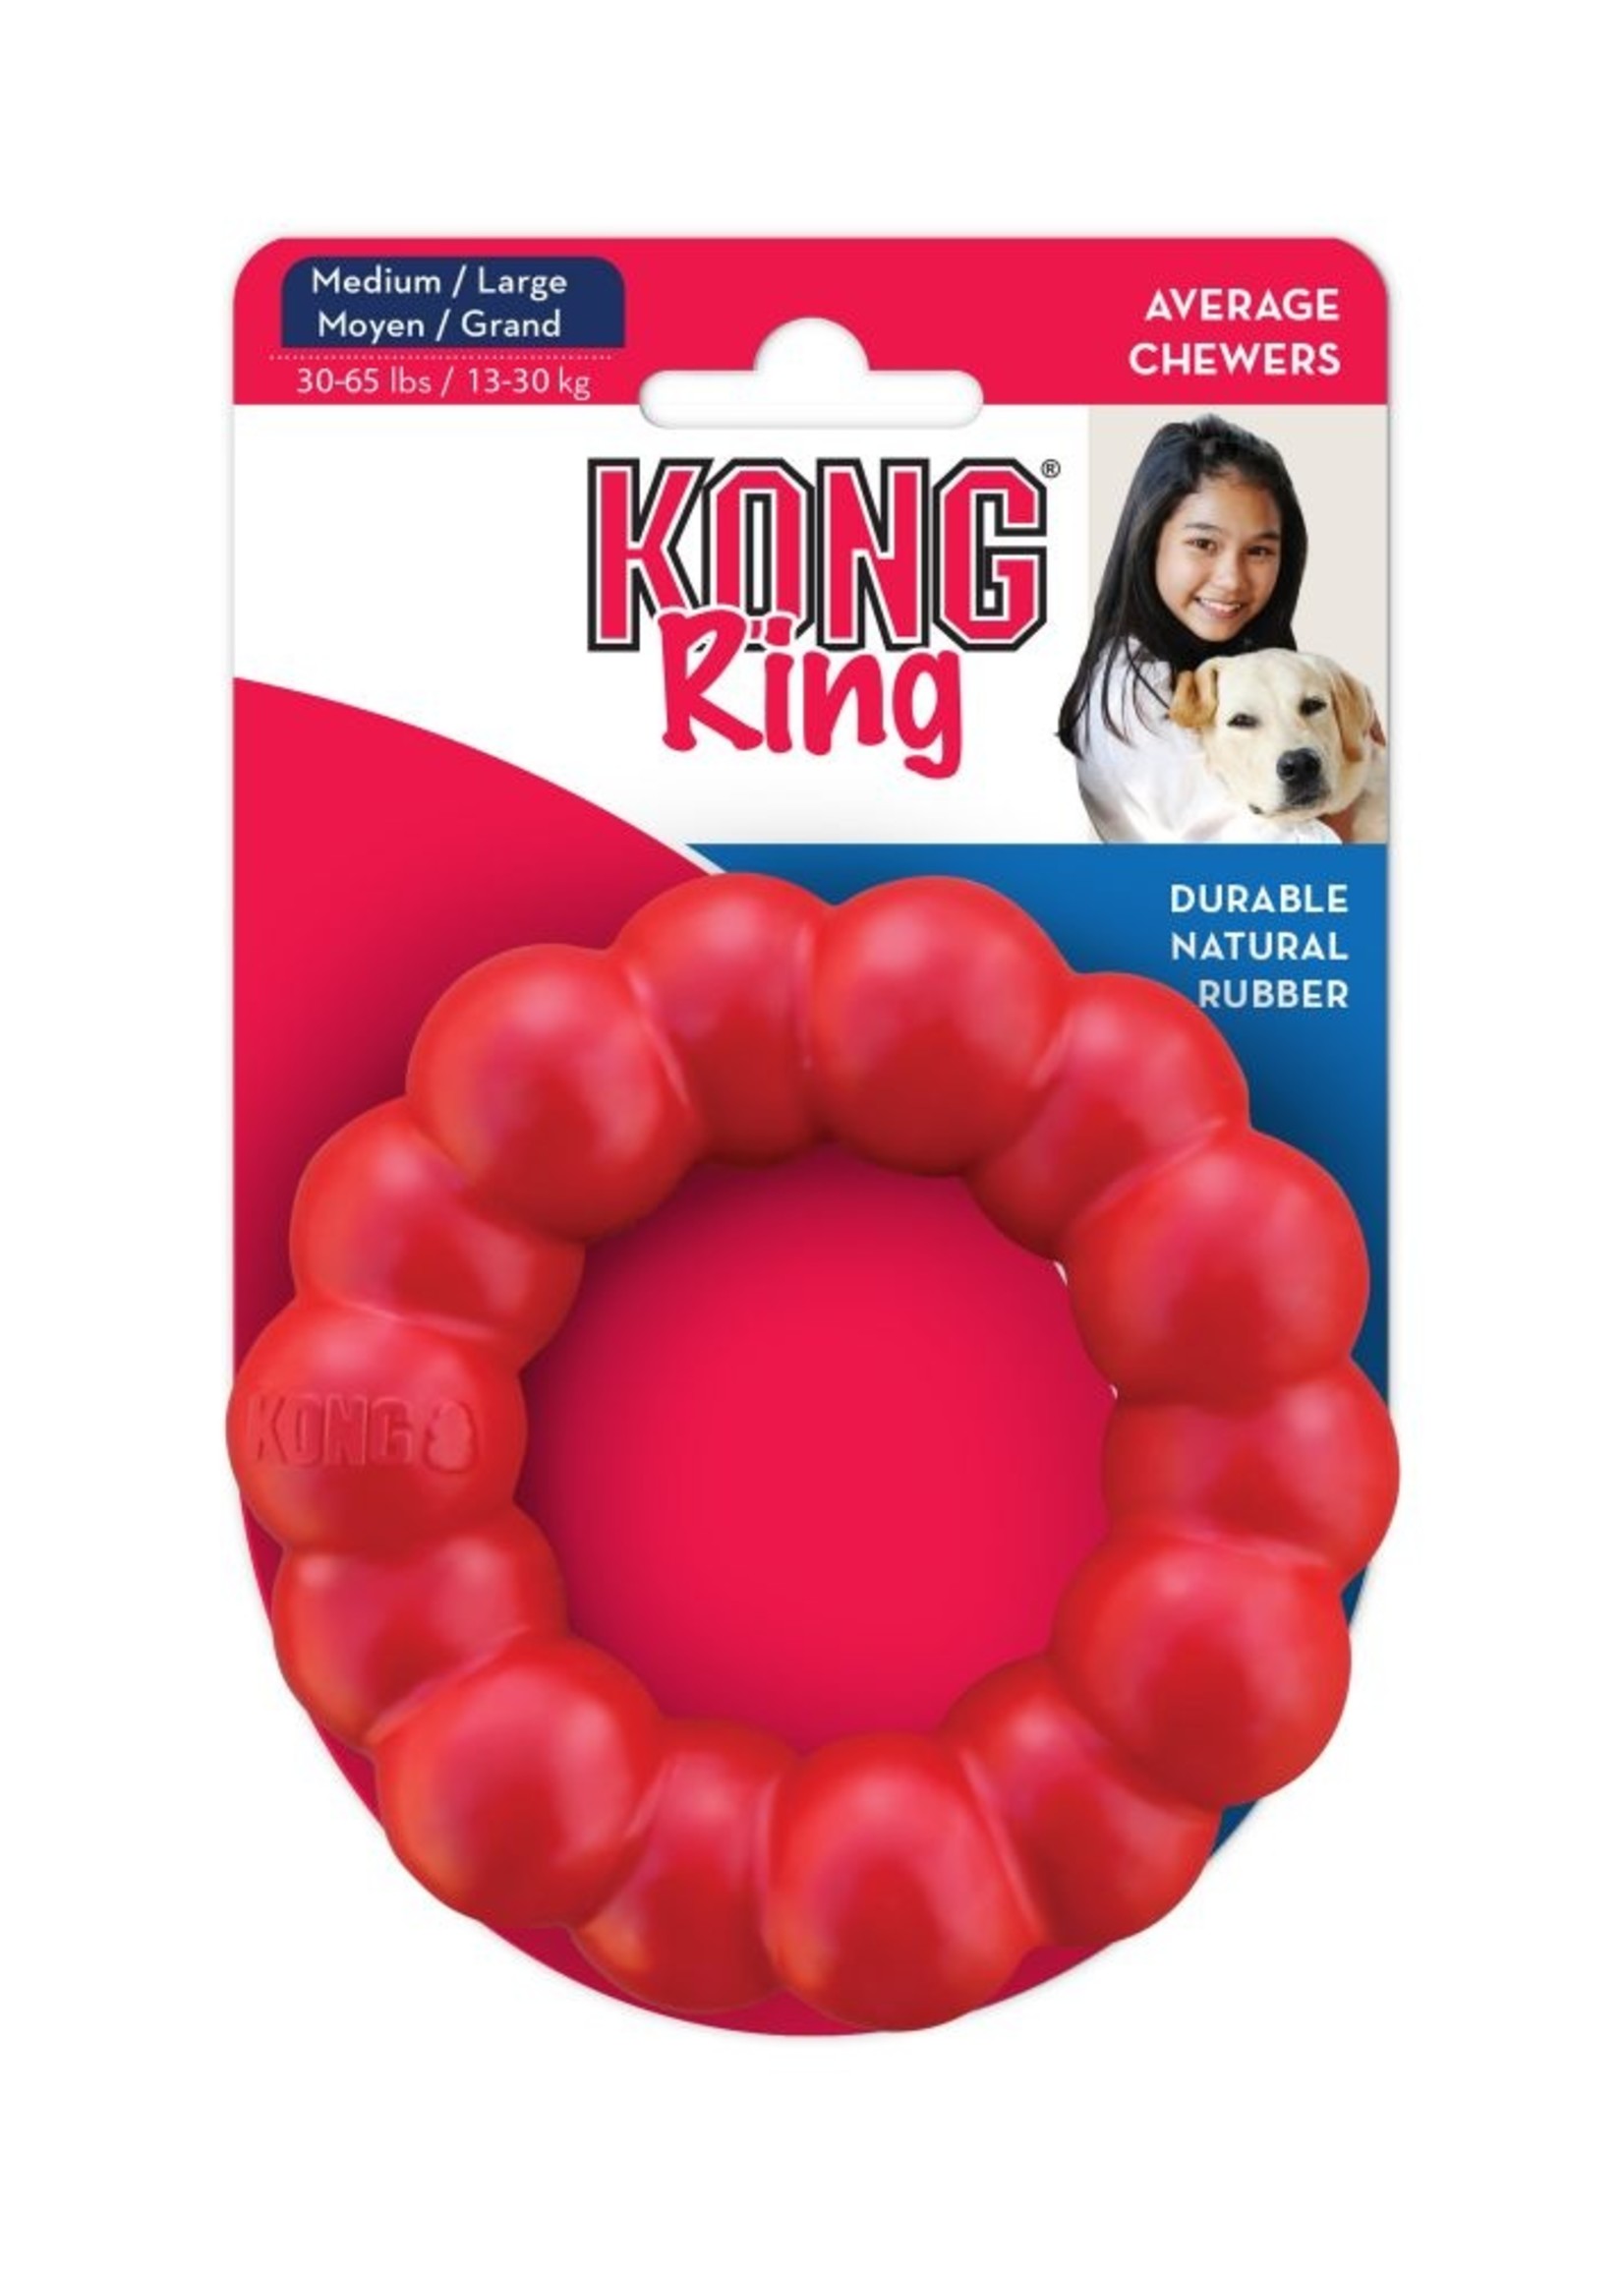 KONG Ring Small/Medium